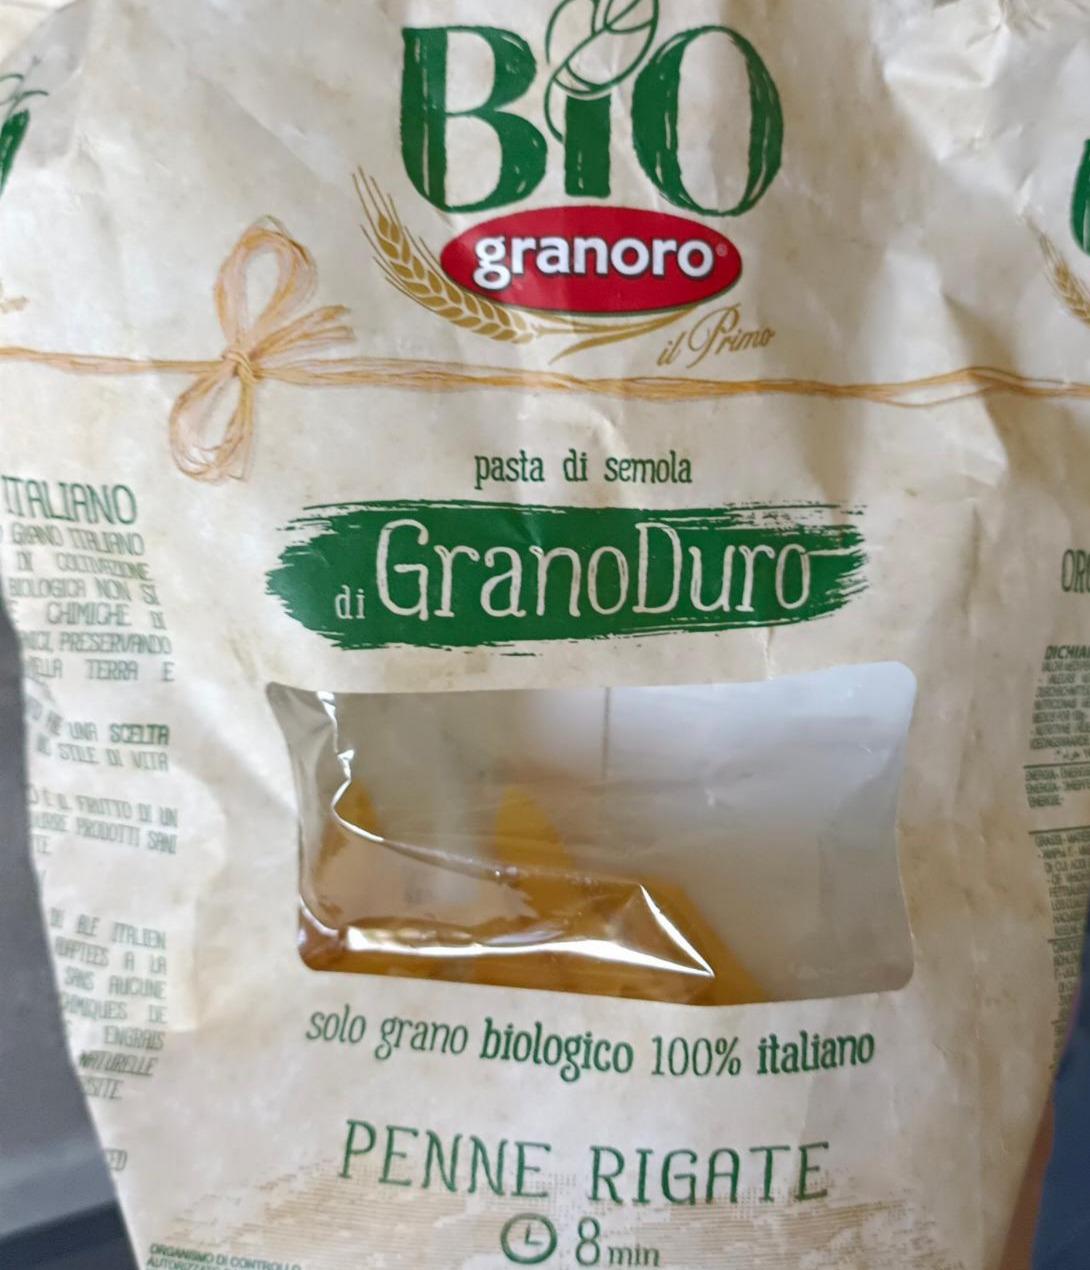 Zdjęcia - pasta di semola di GranoDuro Bio granoro